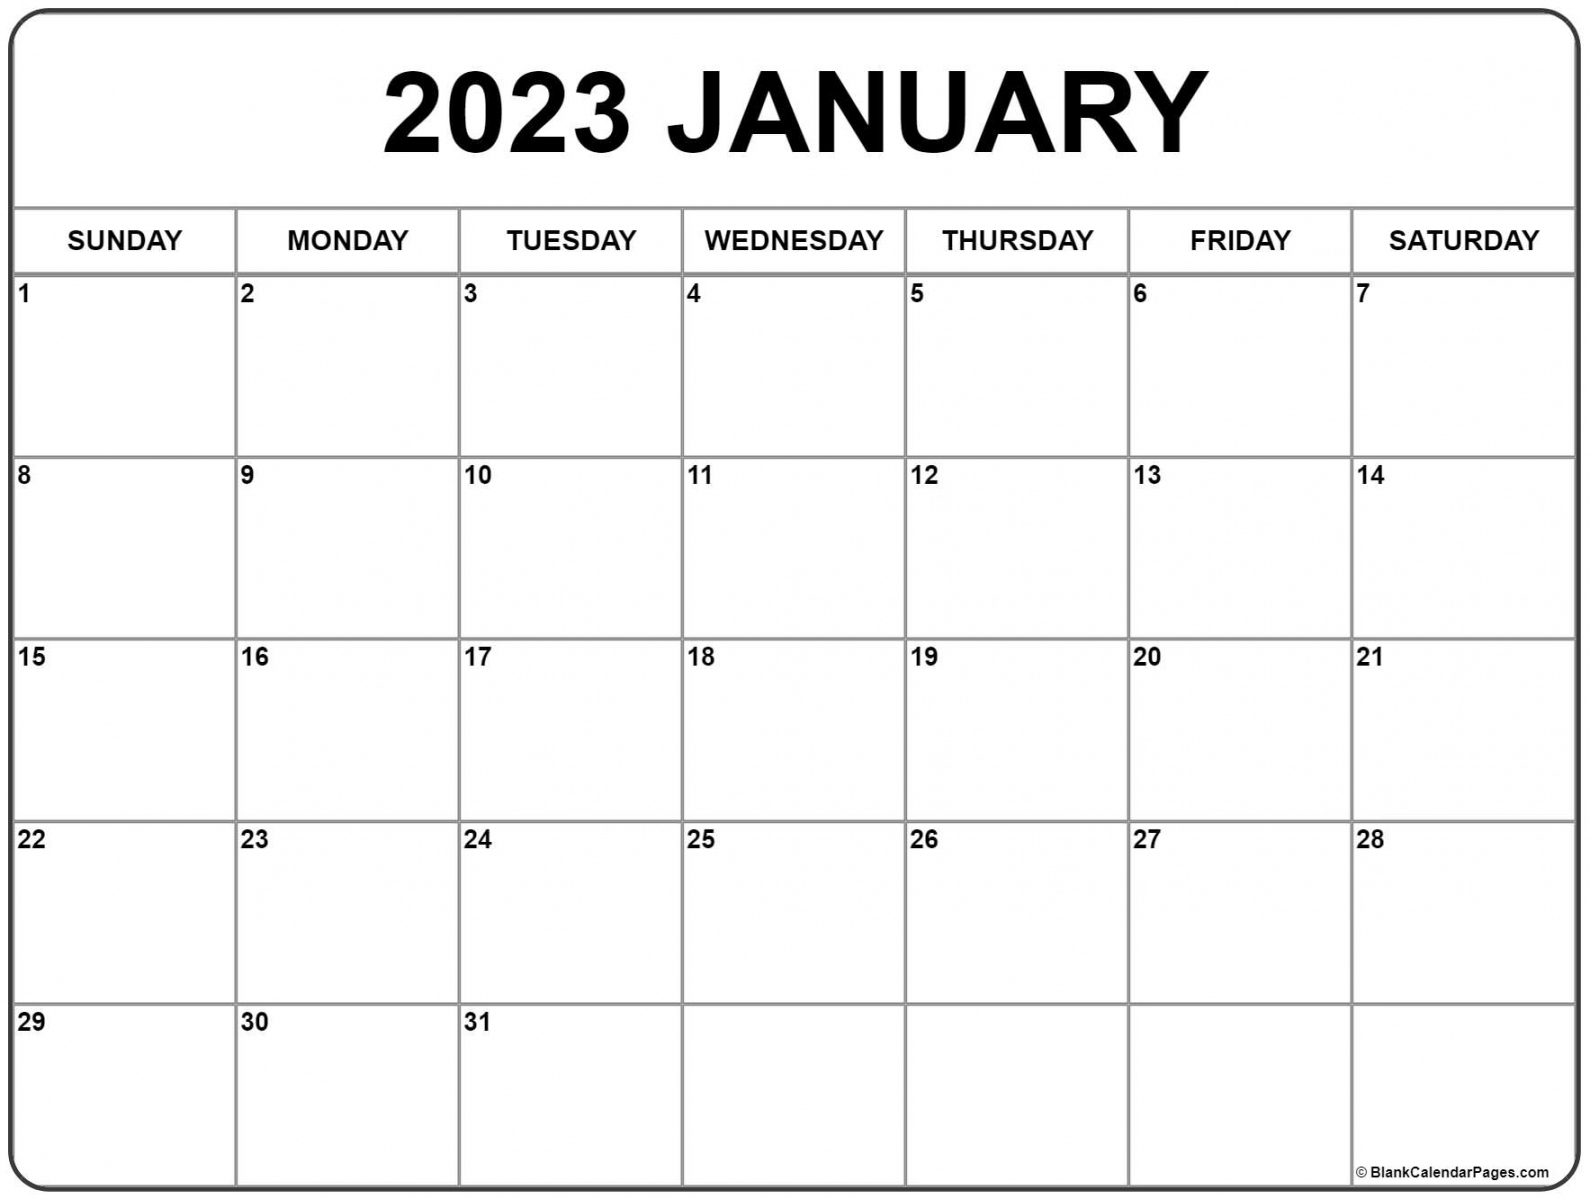 Free 2023 Calendar Printable - Printable - January  calendar  free printable calendar